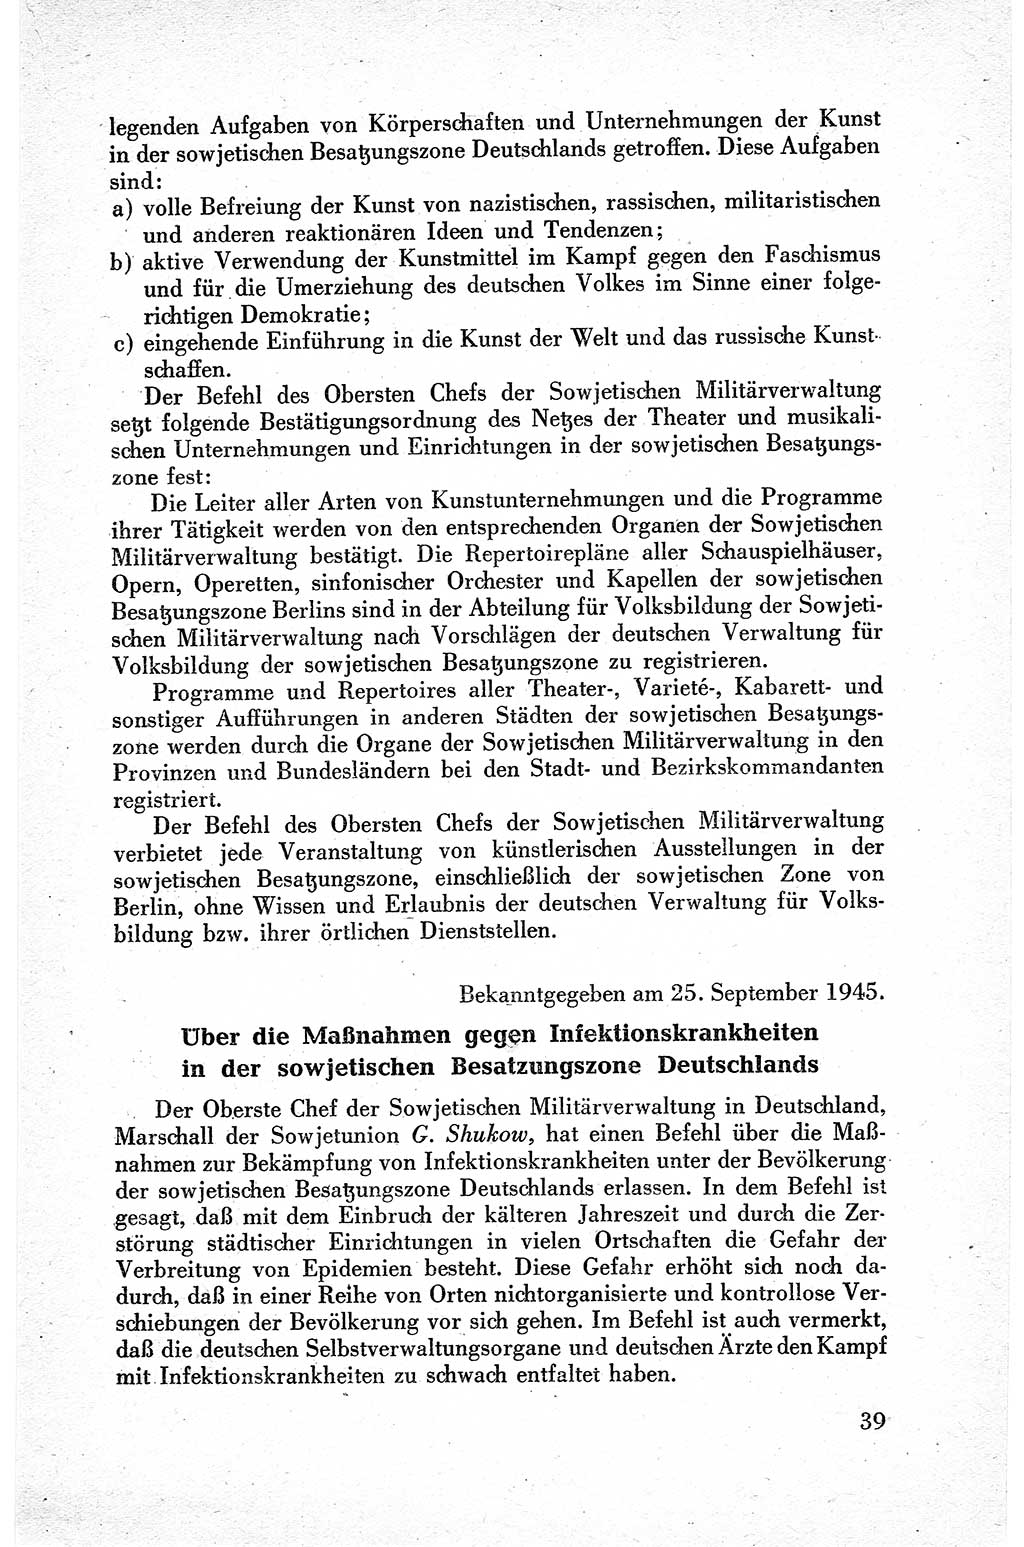 Befehle des Obersten Chefs der Sowjetischen Miltärverwaltung (SMV) in Deutschland - Aus dem Stab der Sowjetischen Militärverwaltung in Deutschland 1945, Seite 39 (Bef. SMV Dtl. 1945, S. 39)